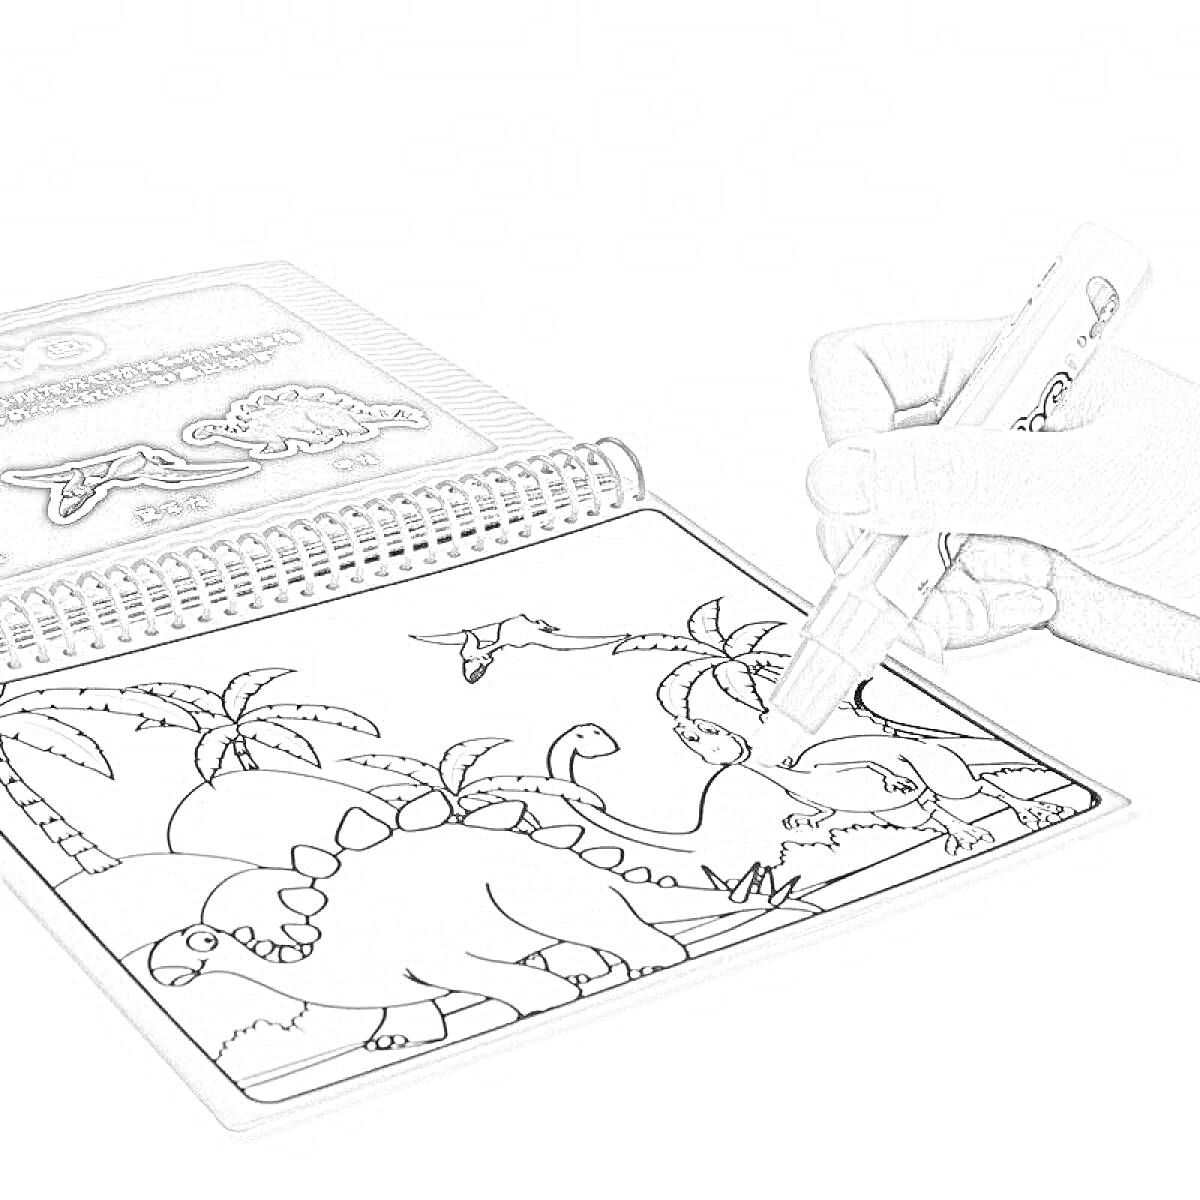 Раскраска Раскраска с водным маркером: динозавры, деревья, человек раскрашивает страницу